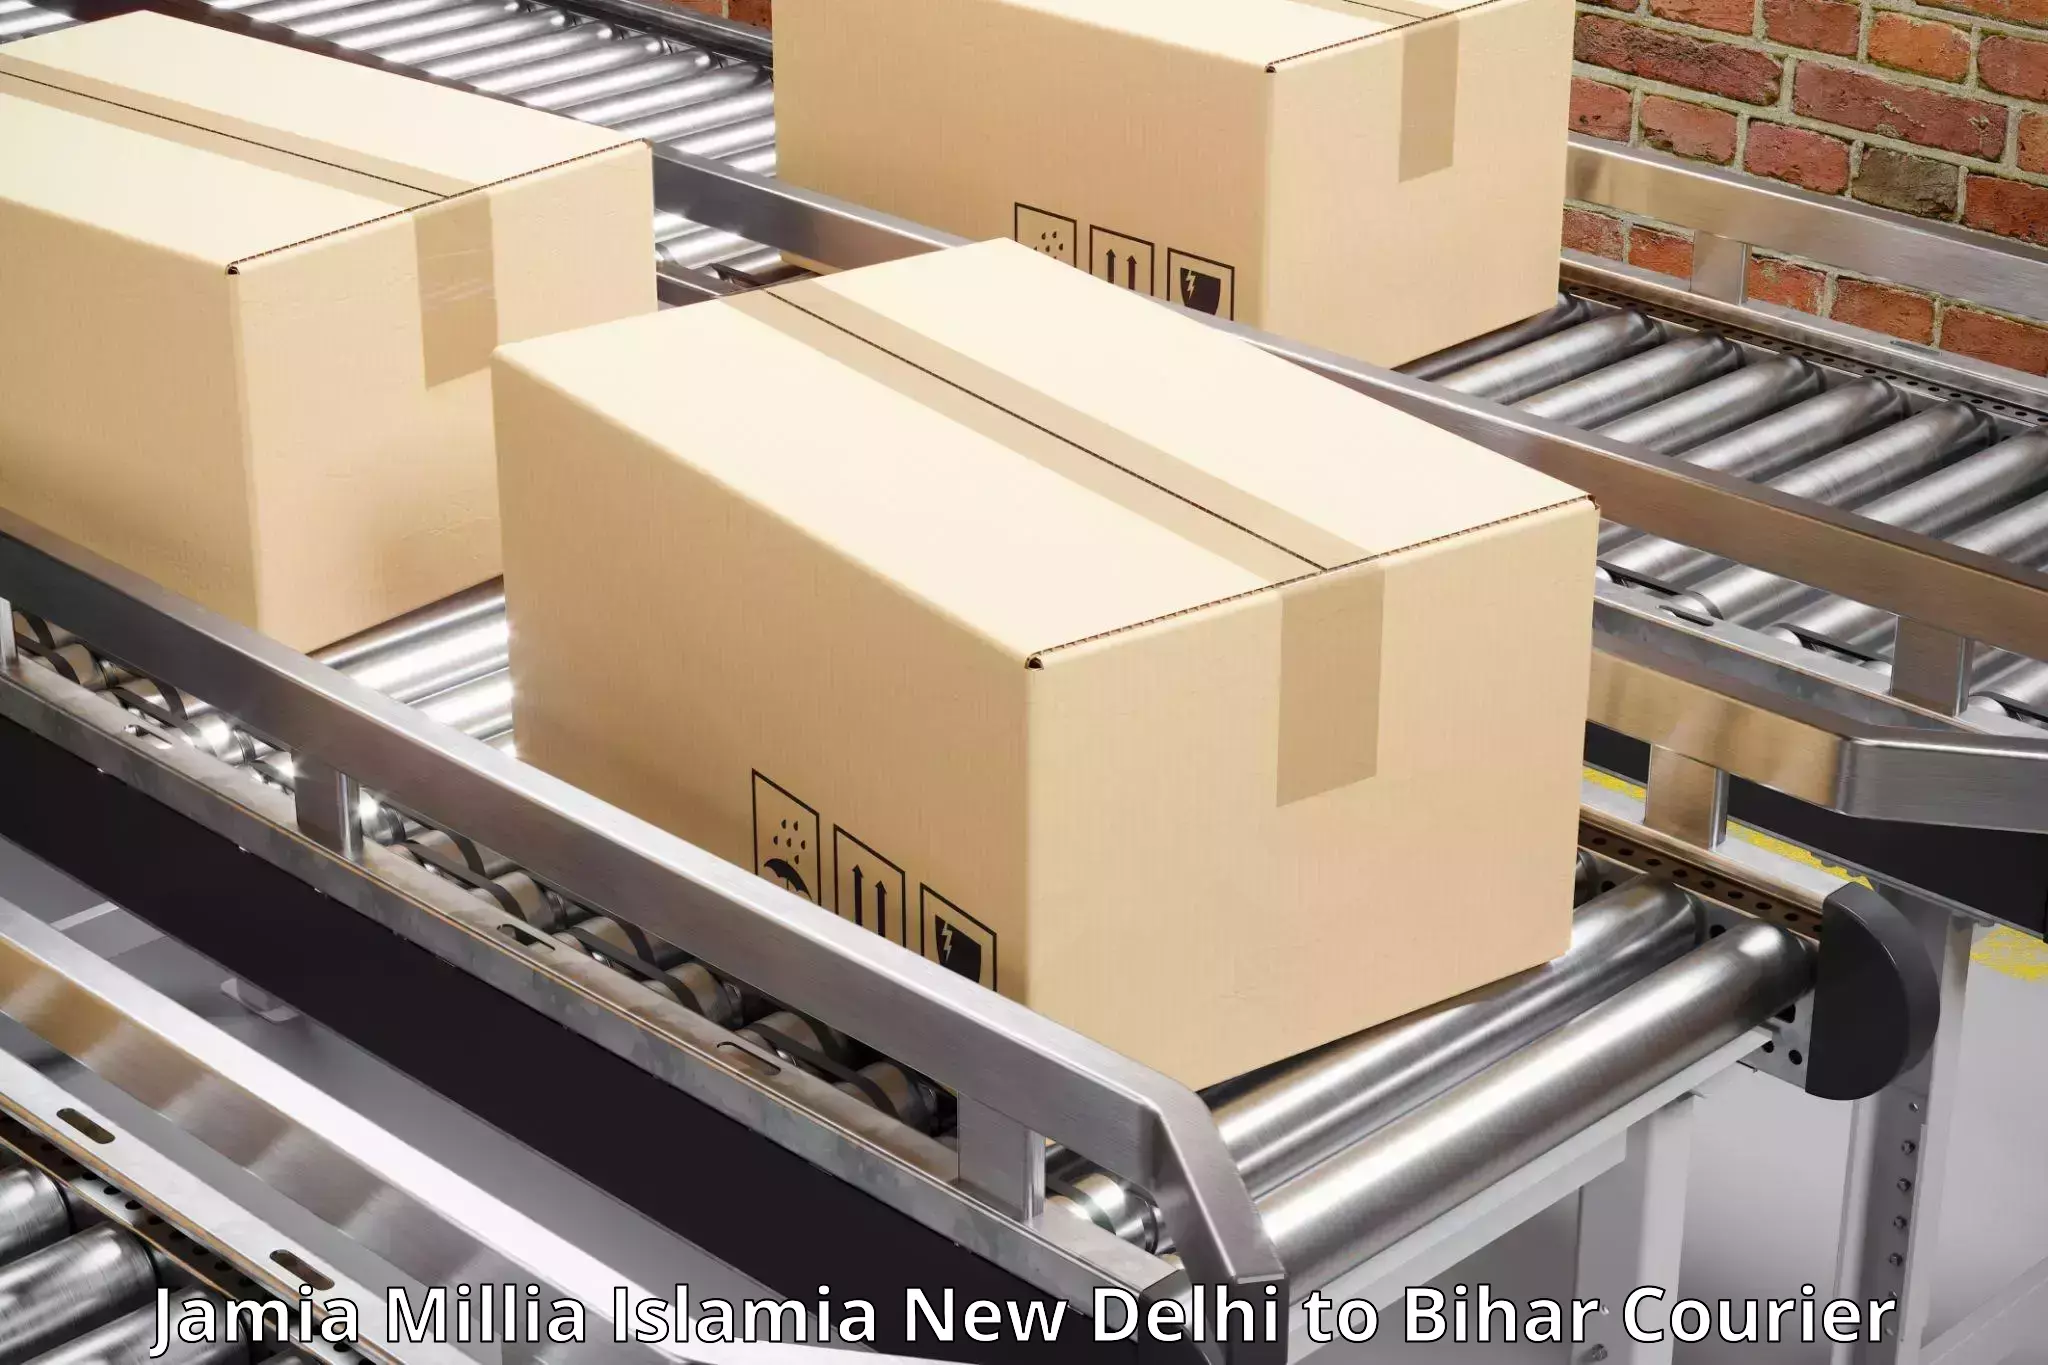 Ocean freight courier Jamia Millia Islamia New Delhi to Baniapur